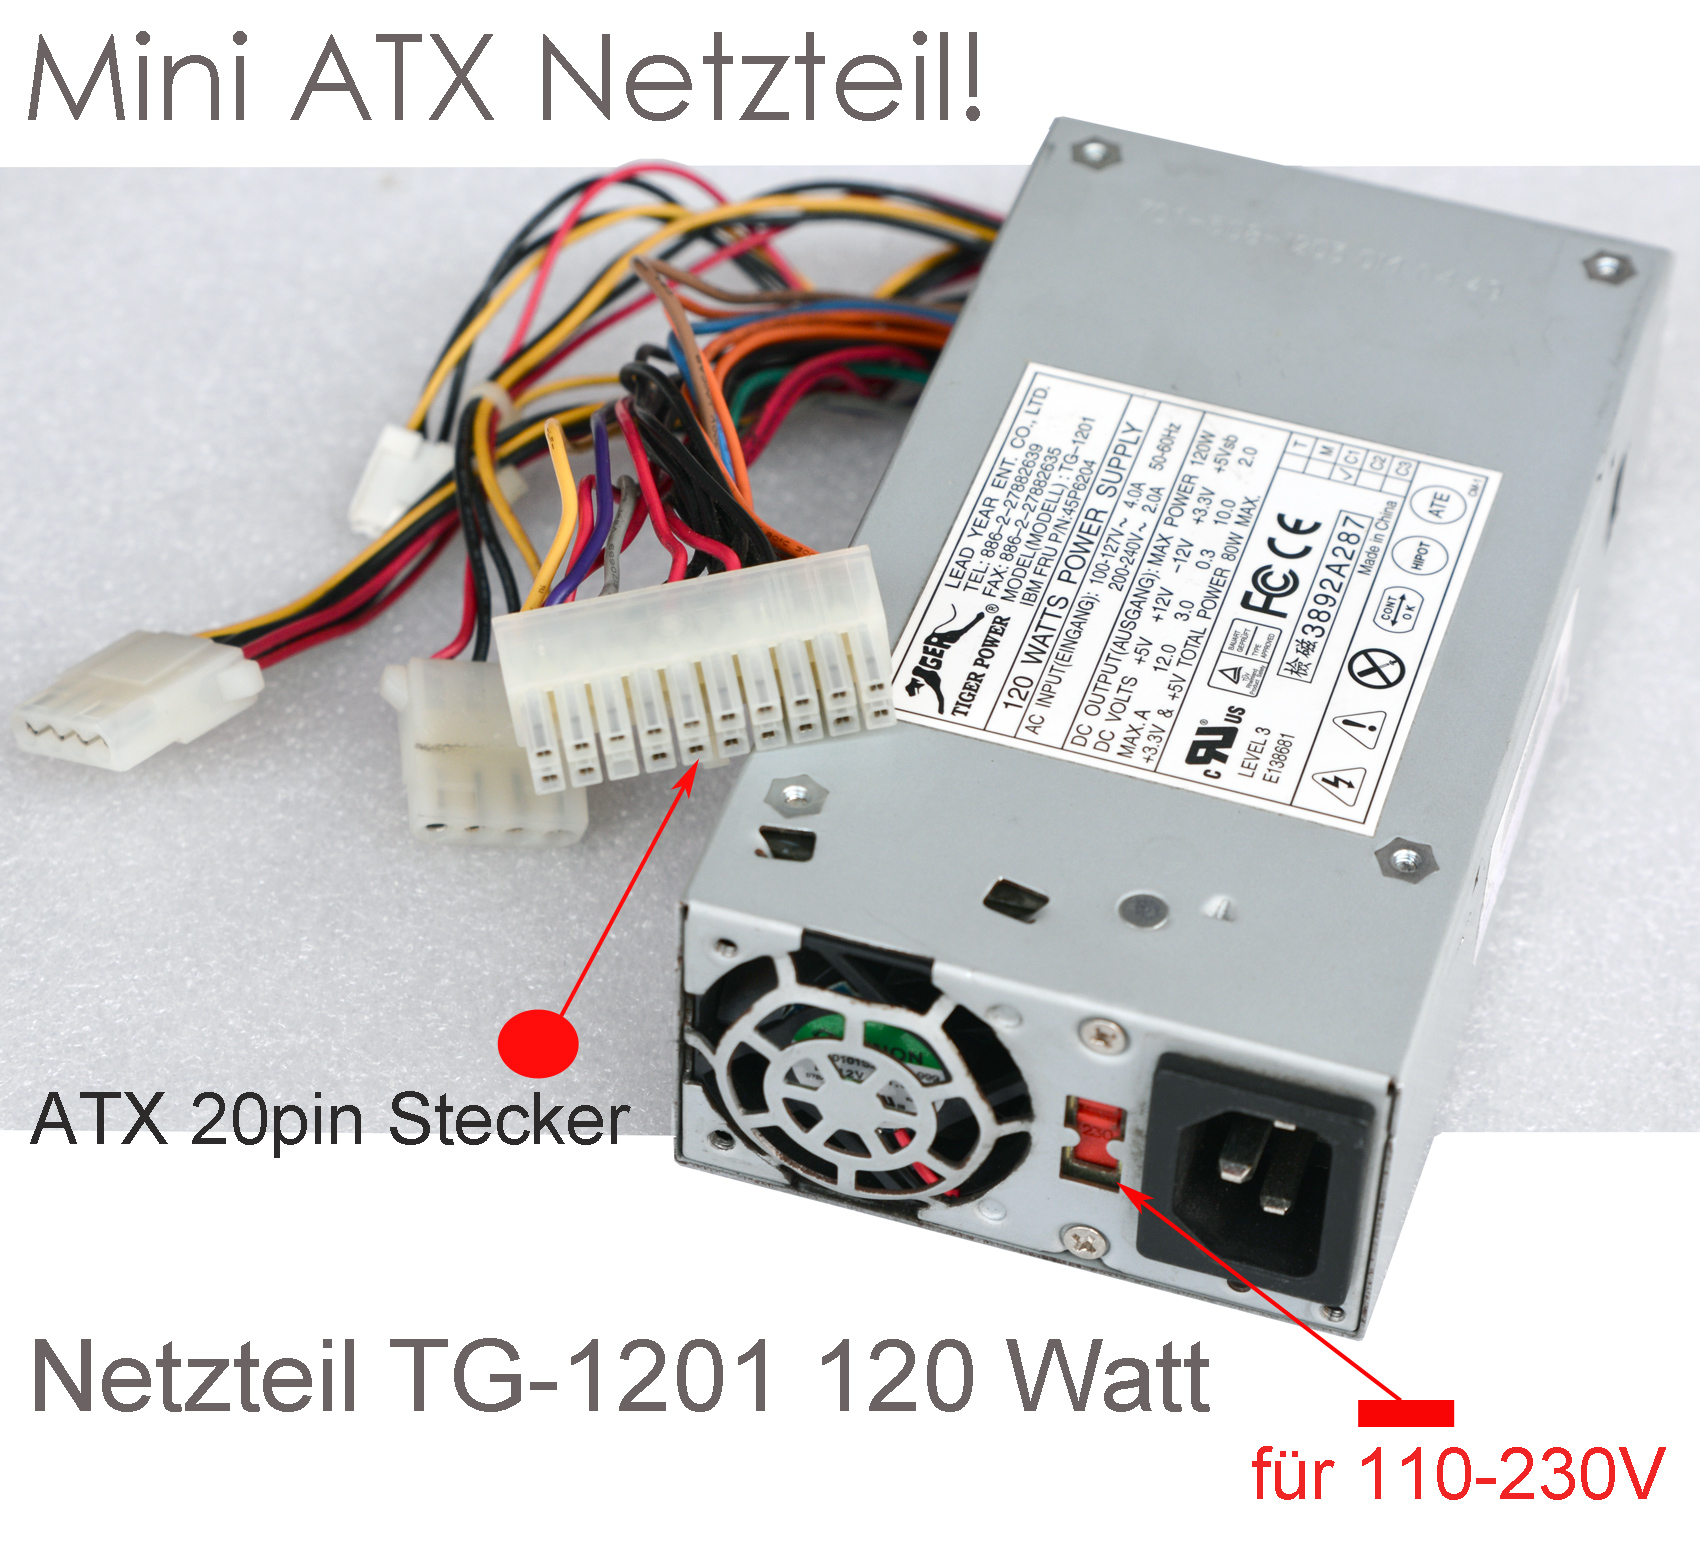 https://www.notebook-service.biz/bilder/Netzteile/ATX/Kleiner_ATX_Netzteil_120W_TG-1201_1.jpg